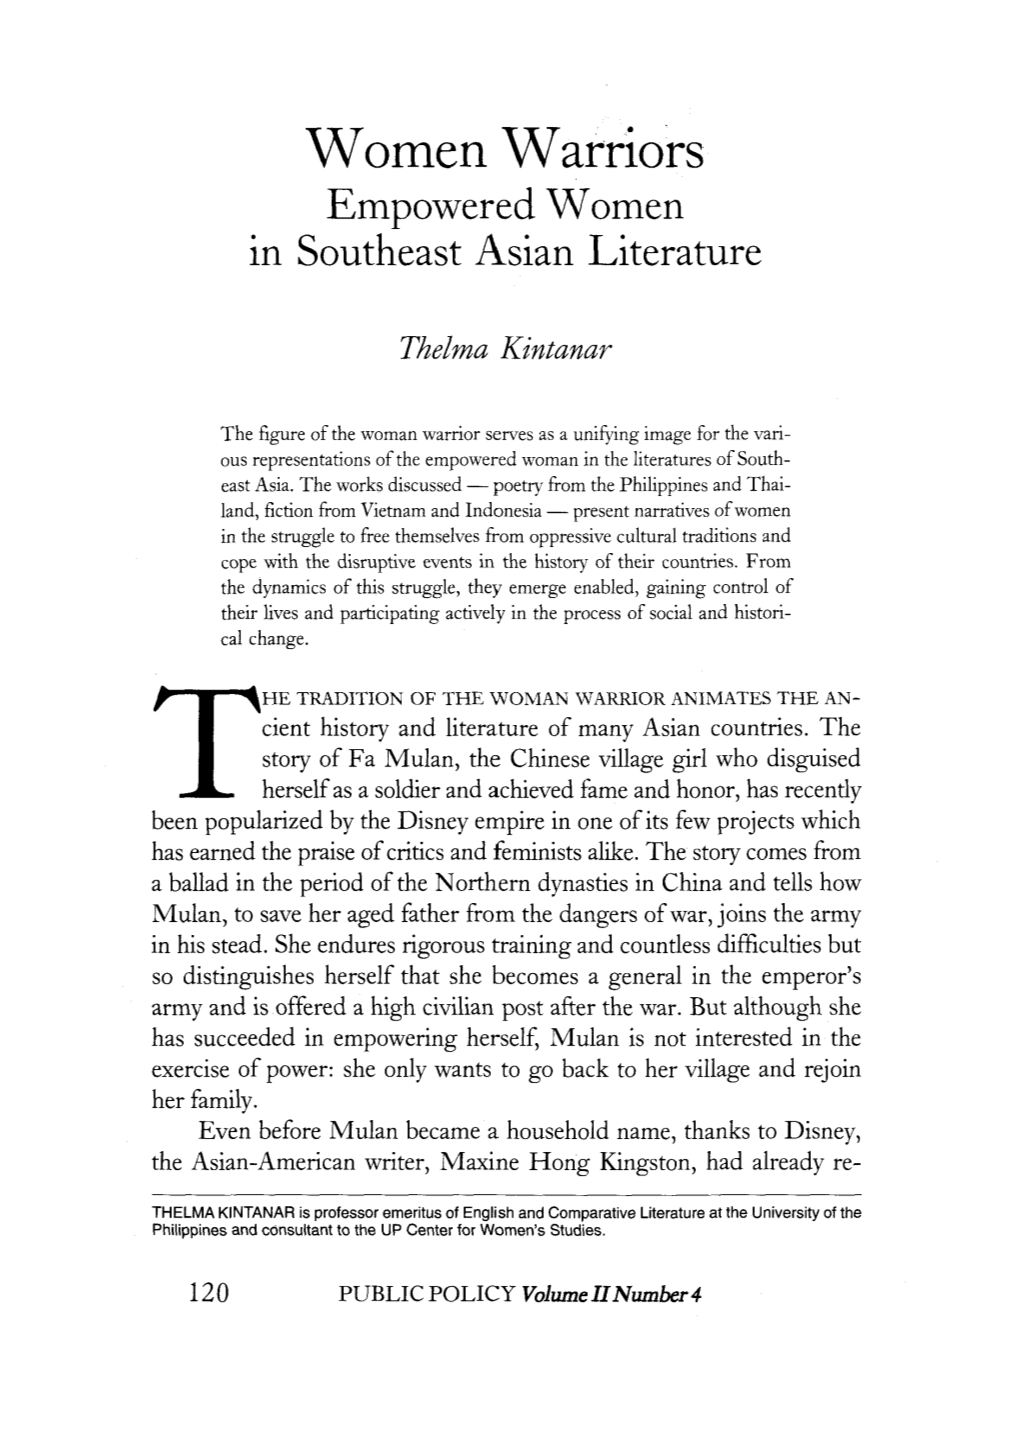 Women Warriors Empowered Women 1N Southeast Asian Literature